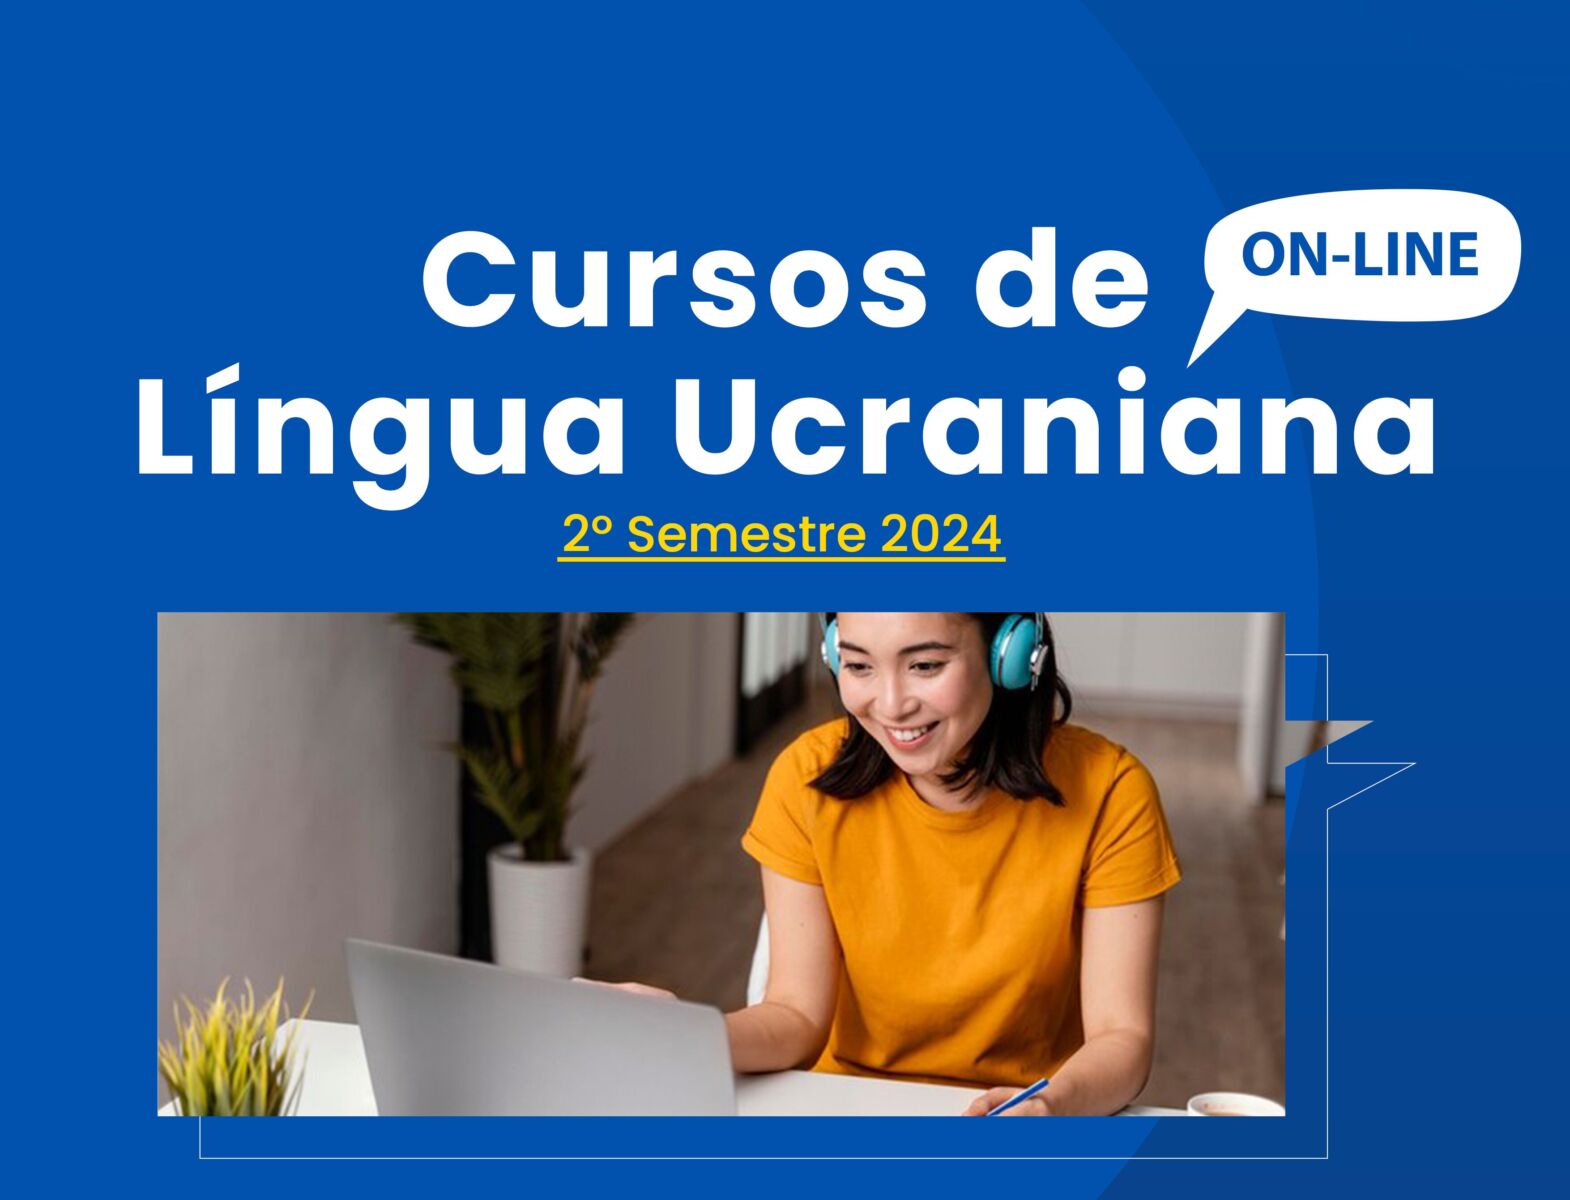 Núcleo de Estudos Eslavos está com inscrições abertas para cursos de ucraniano